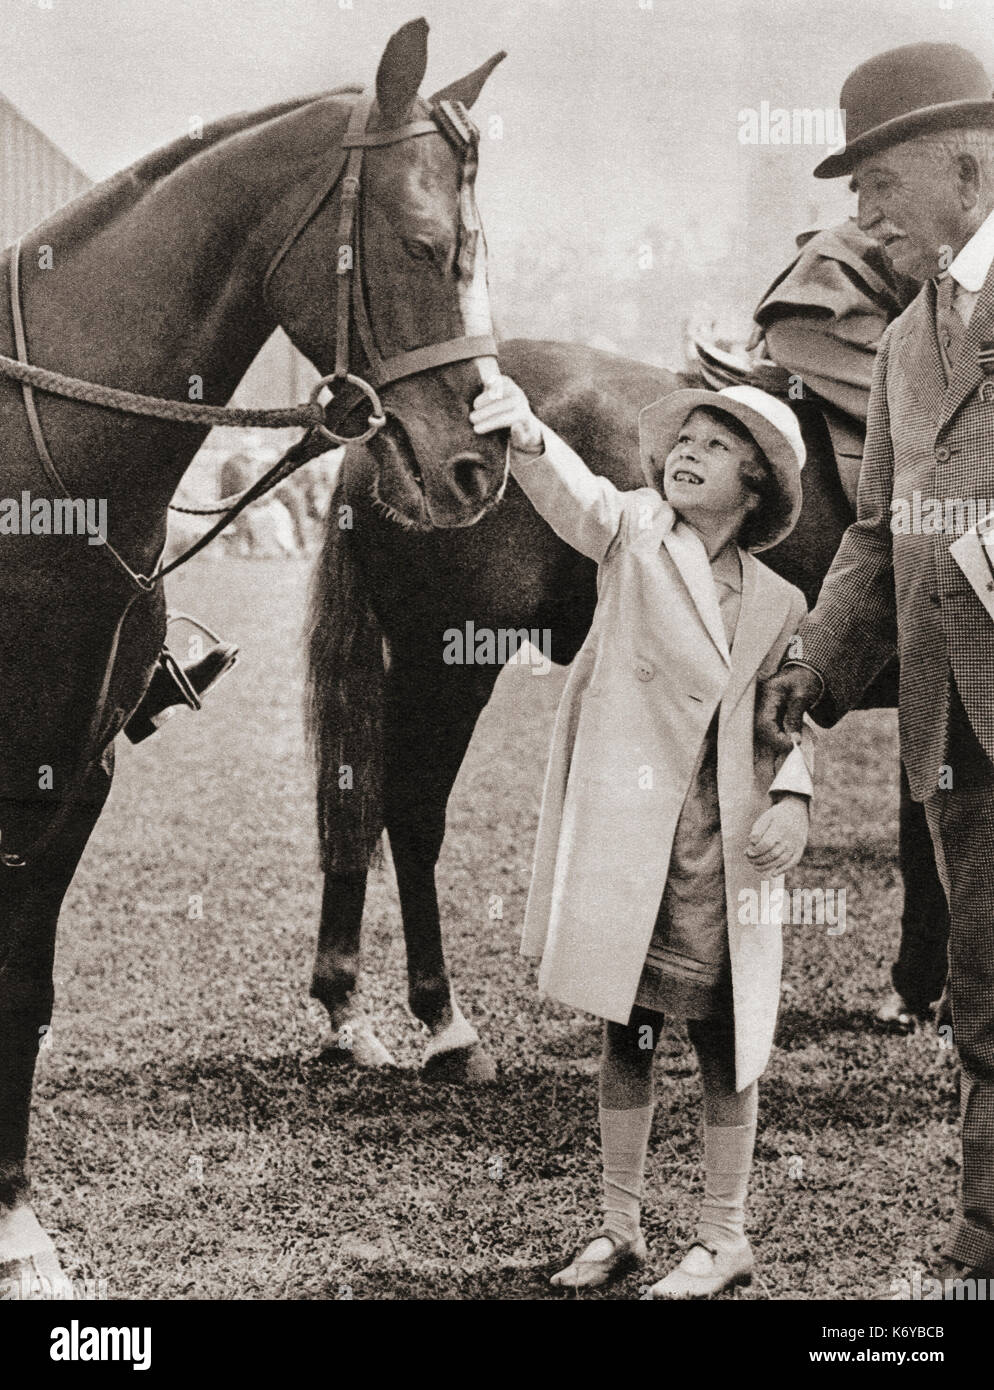 Prinzessin Elizabeth auf der Richmond Horse Show 1934. Prinzessin Elisabeth von York, zukünftige Elisabeth II., 1926 - 2022. Königin des Vereinigten Königreichs. Aus dem Krönungsbuch von König Georg VI. Und Königin Elisabeth, veröffentlicht 1937. Stockfoto